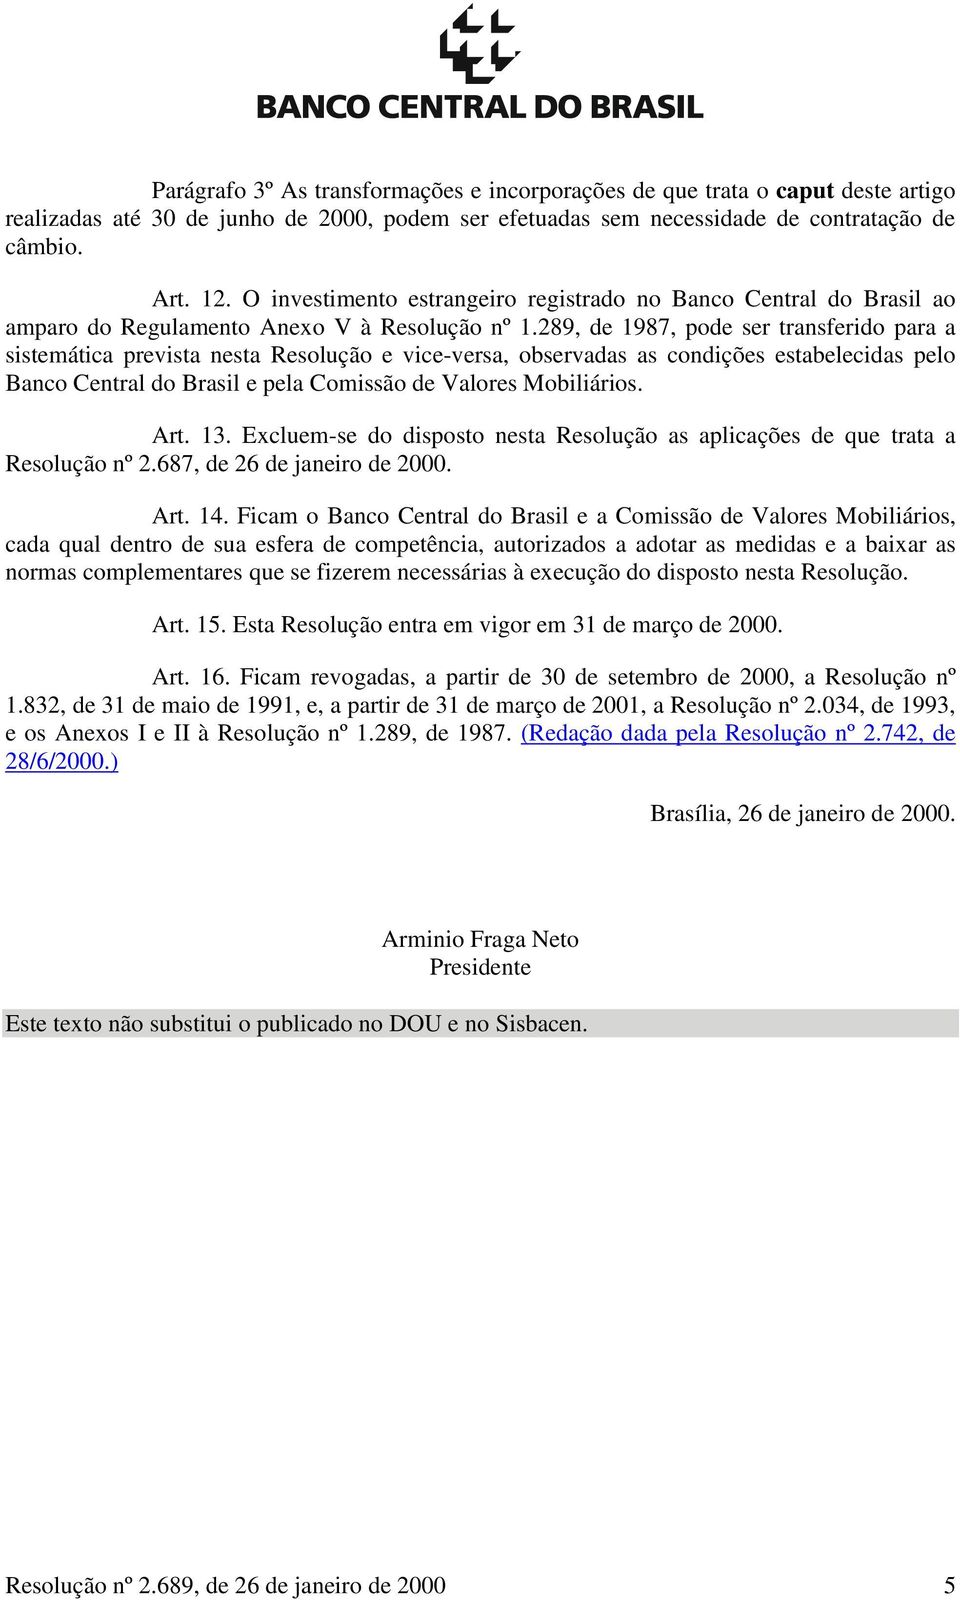 289, de 1987, pode ser transferido para a sistemática prevista nesta Resolução e vice-versa, observadas as condições estabelecidas pelo Banco Central do Brasil e pela Comissão de Valores Mobiliários.